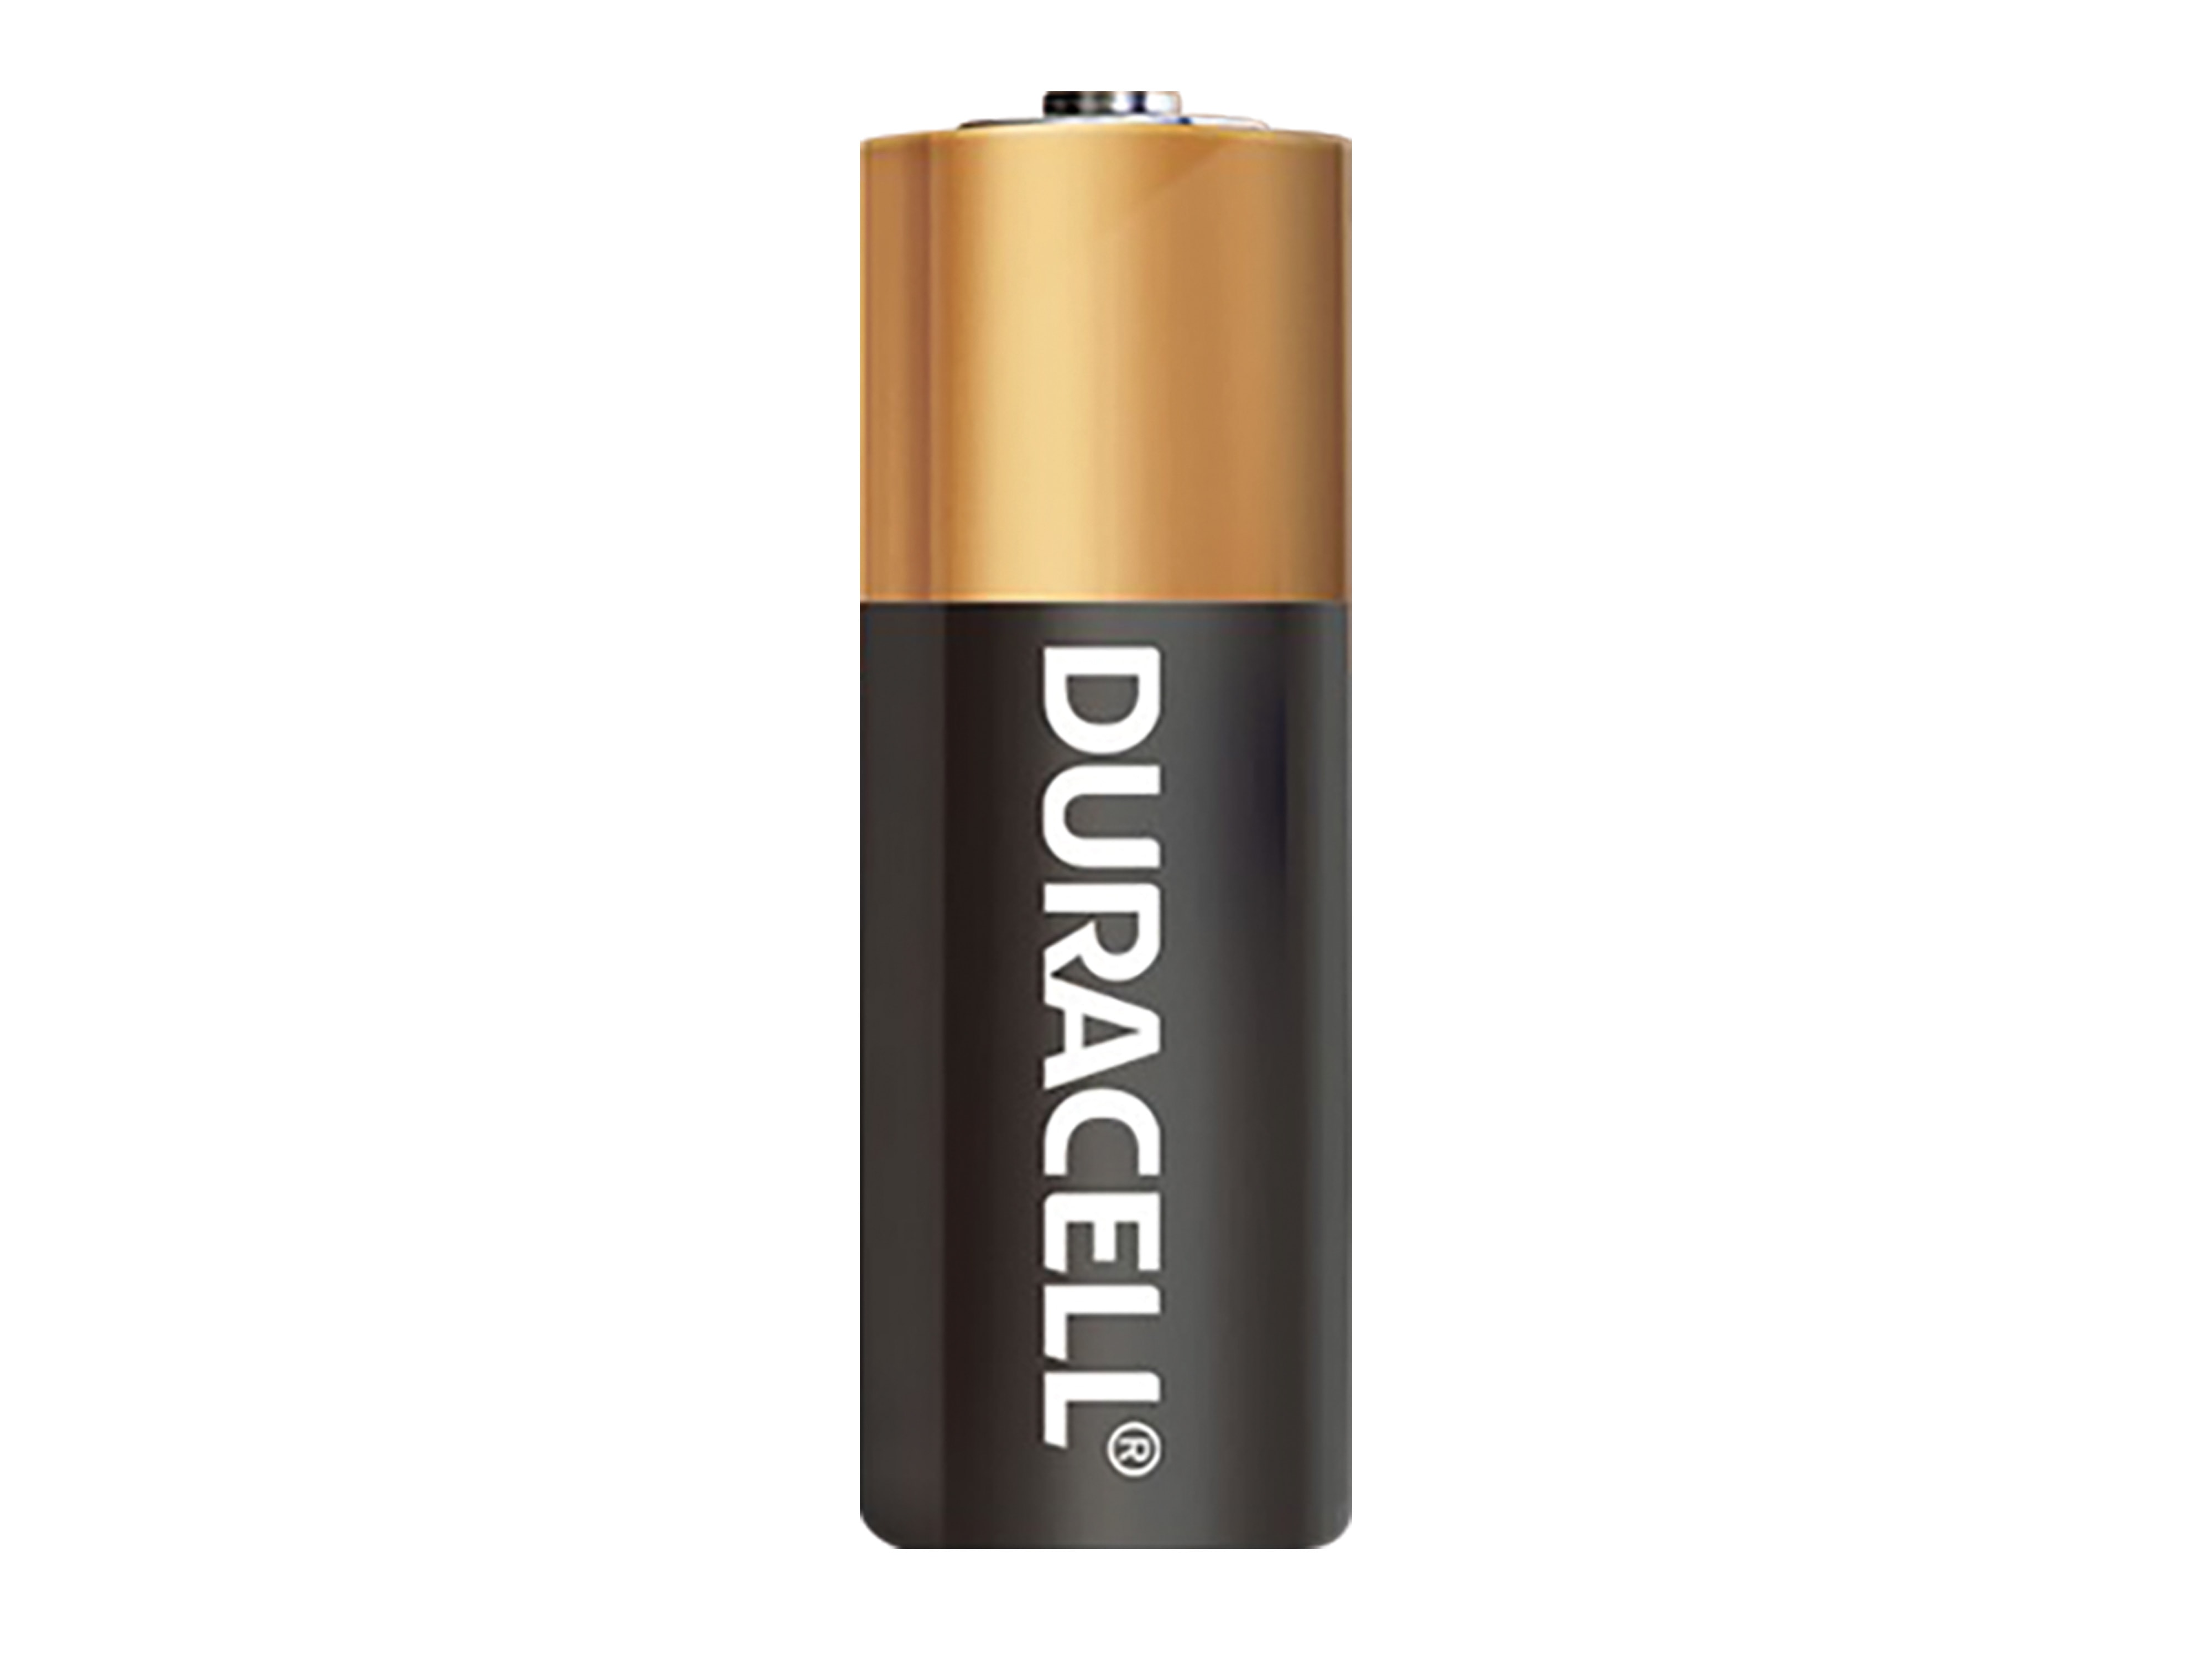 DURACELL Batterie Alkaline, MN21, 12V, Electronics, 2 Stück